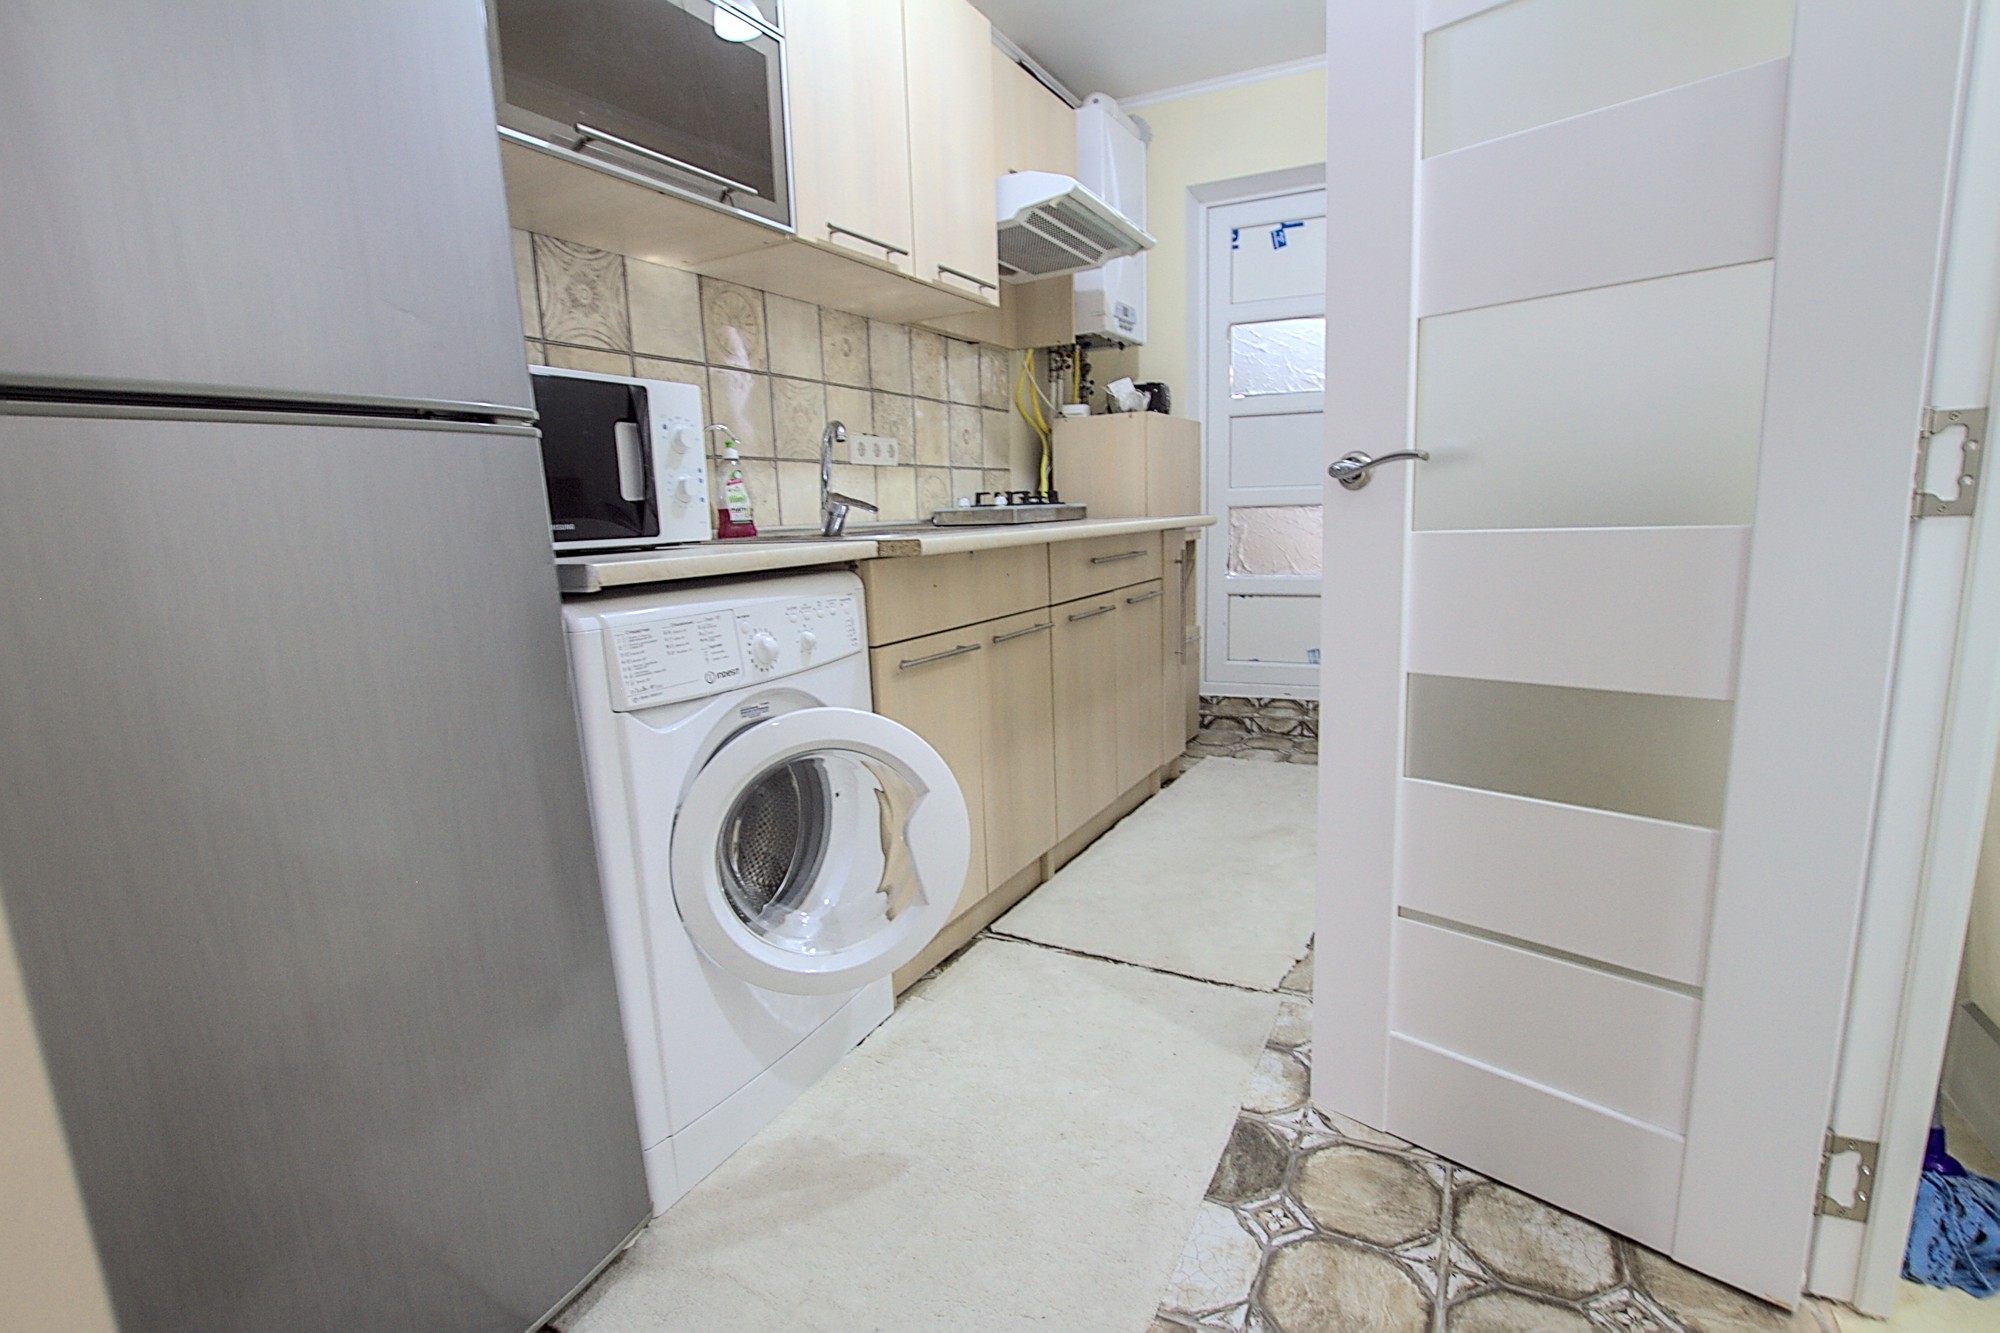 Petty & Pretty Dwelling ist ein 1 Zimmer Apartment zur Miete in Chisinau, Moldova